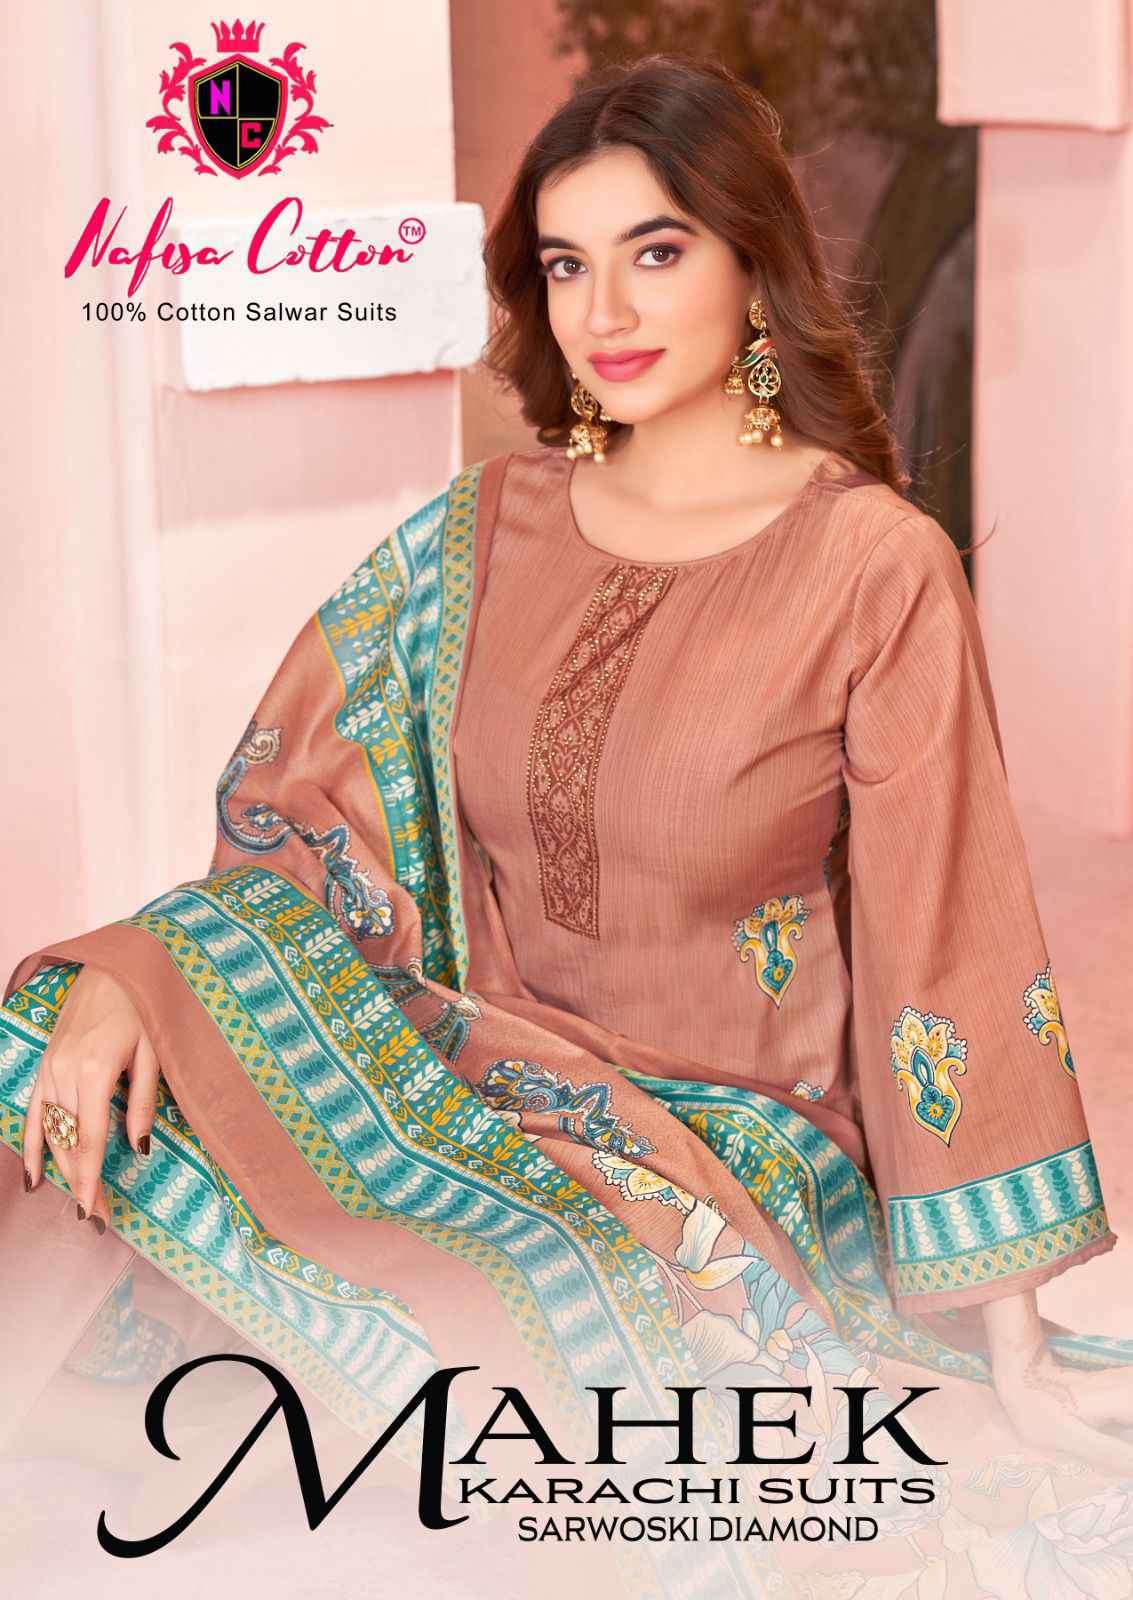 Nafisa Cotton Mahek Summer Collection Unstitch Karachi Suits Catalog Exporters